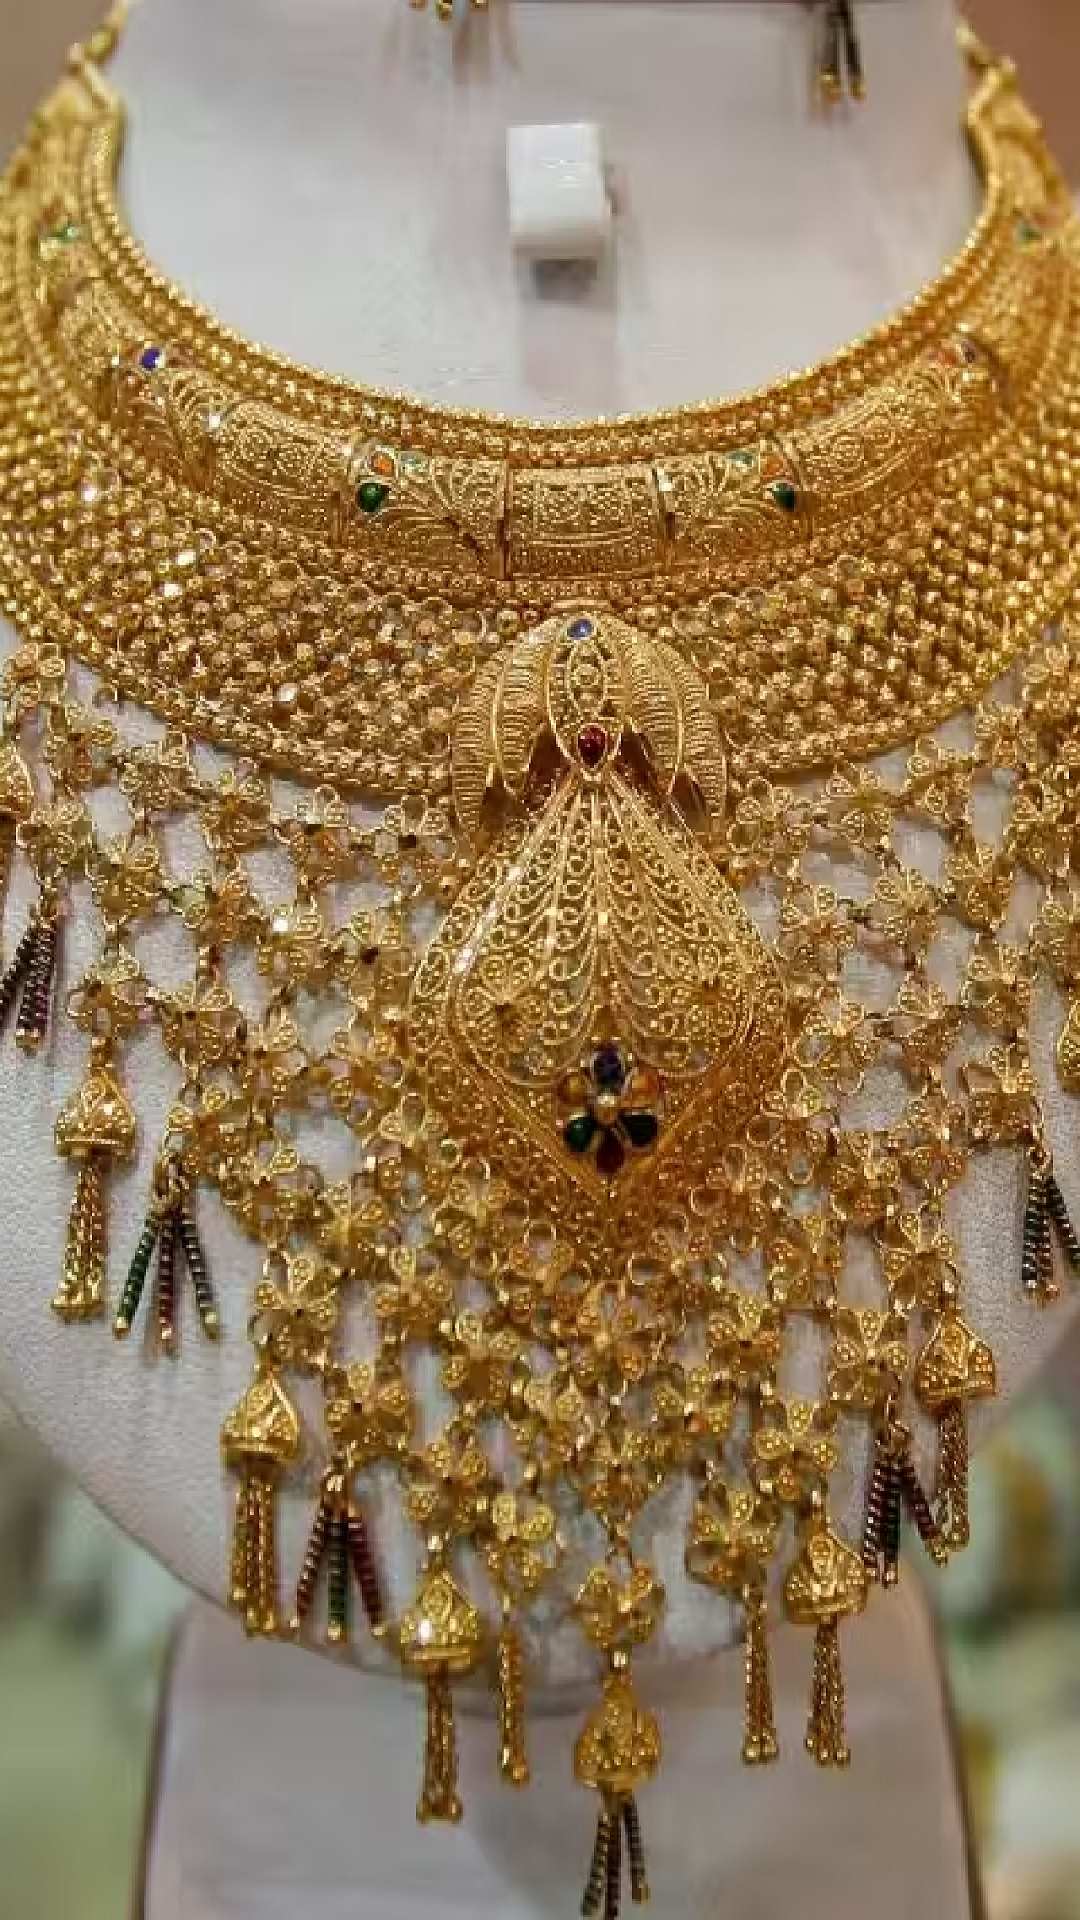 Gold Price Today : শুরুতে কমল সোনার দাম, এক নজরে বাংলার বাজার দর